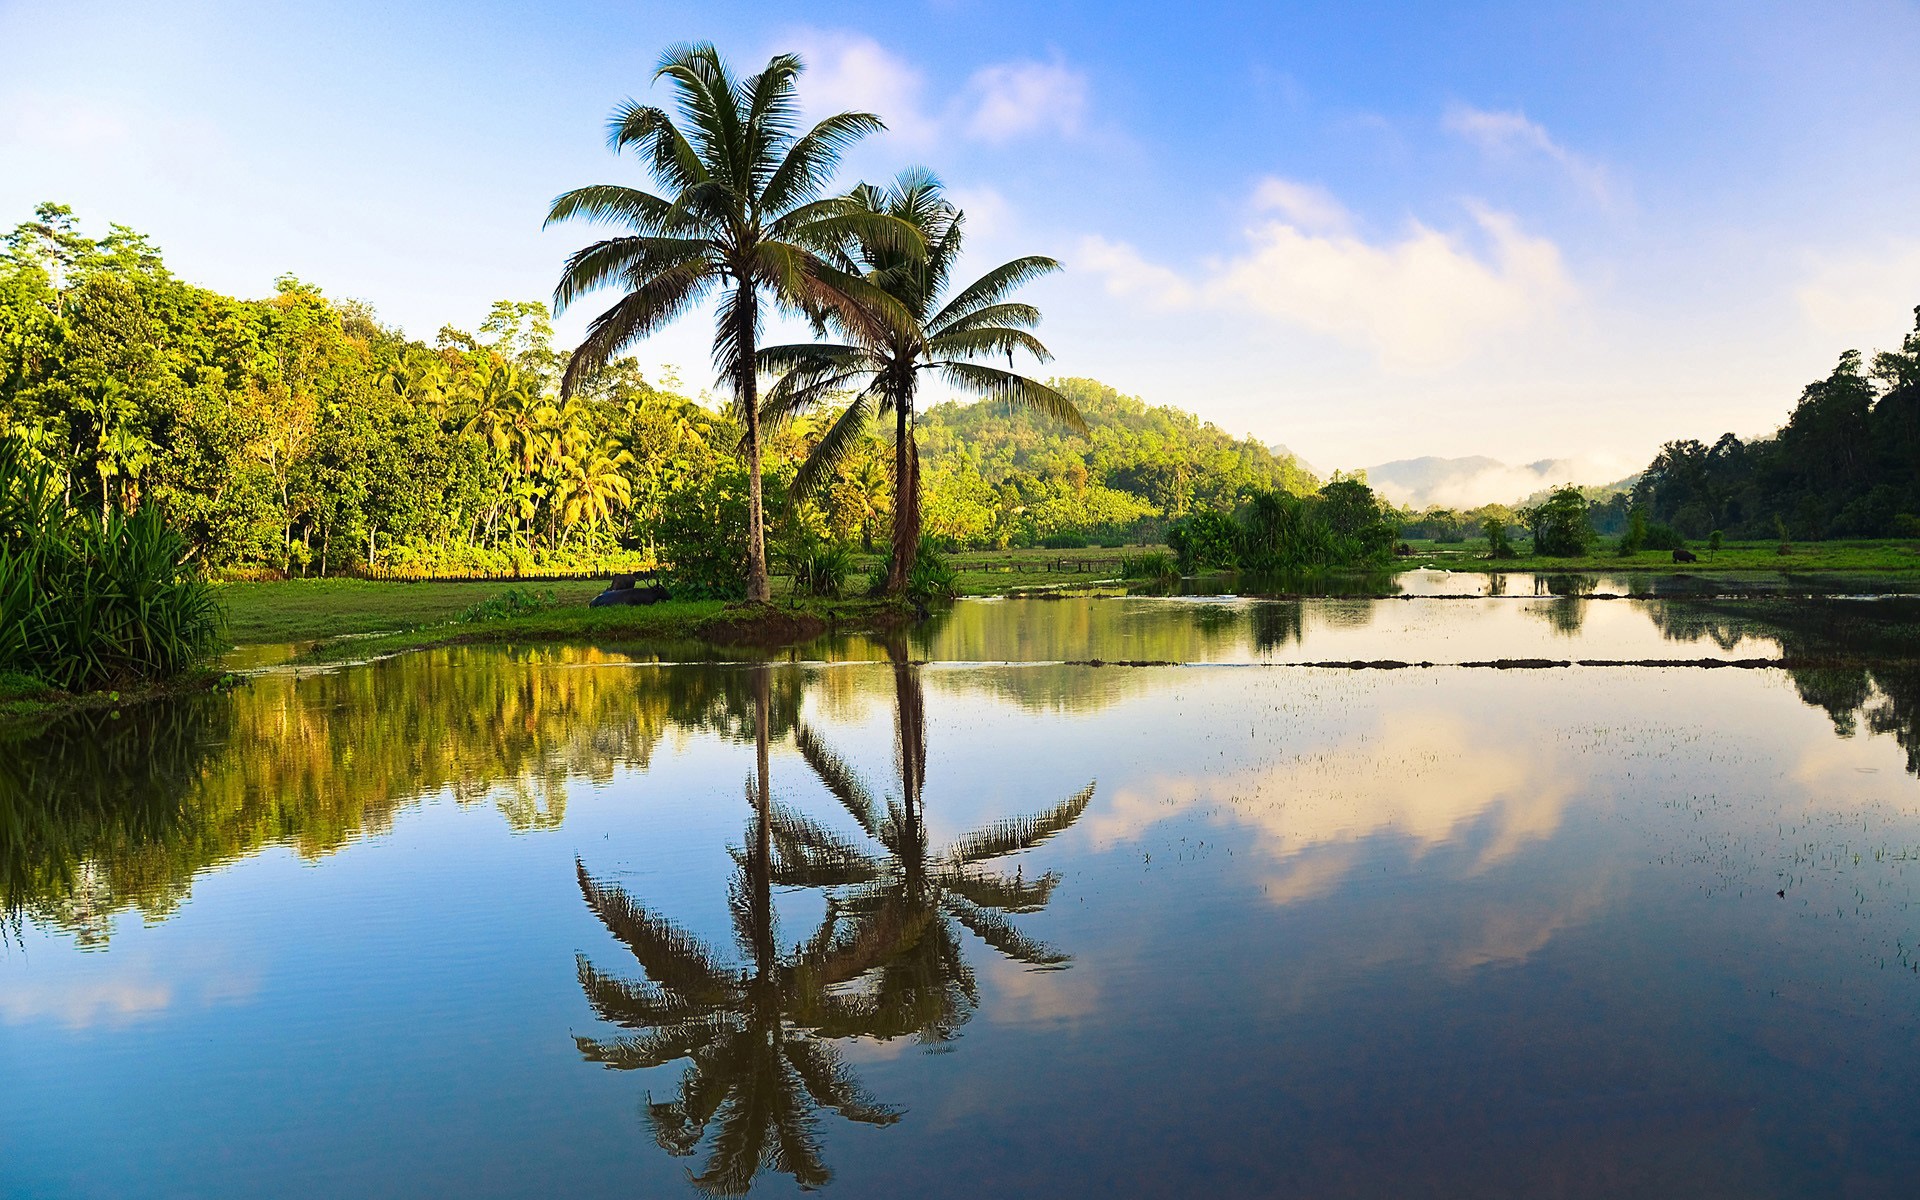 Sri Lanka beautiful nature, trees, palms, water reflection ...